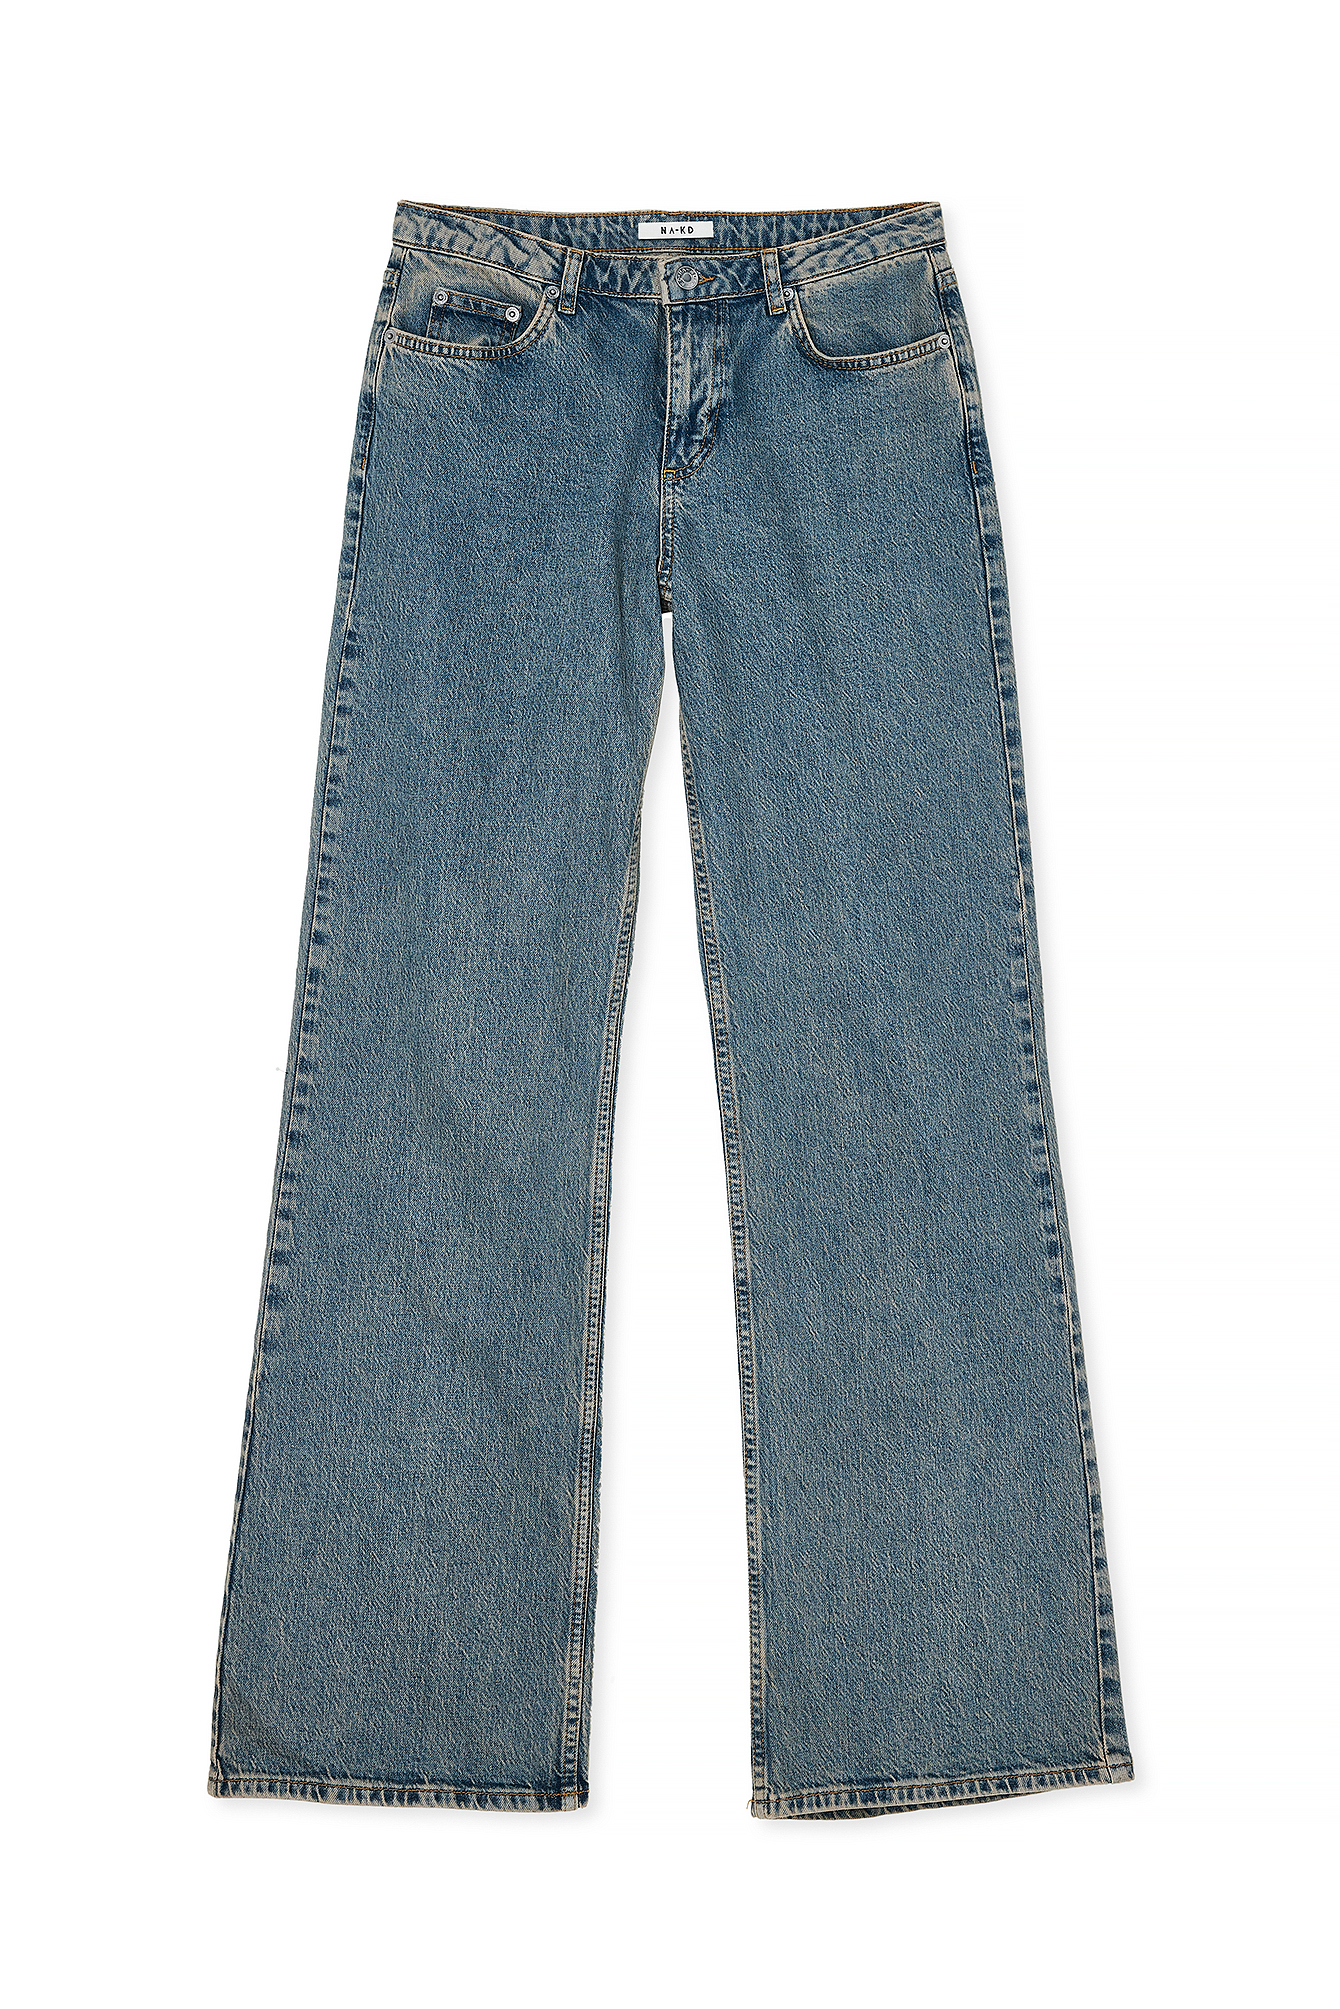 J Brand Women's Jeans Trousers Stretch Slim Straight Low R 36 S W28 L34  Dark New